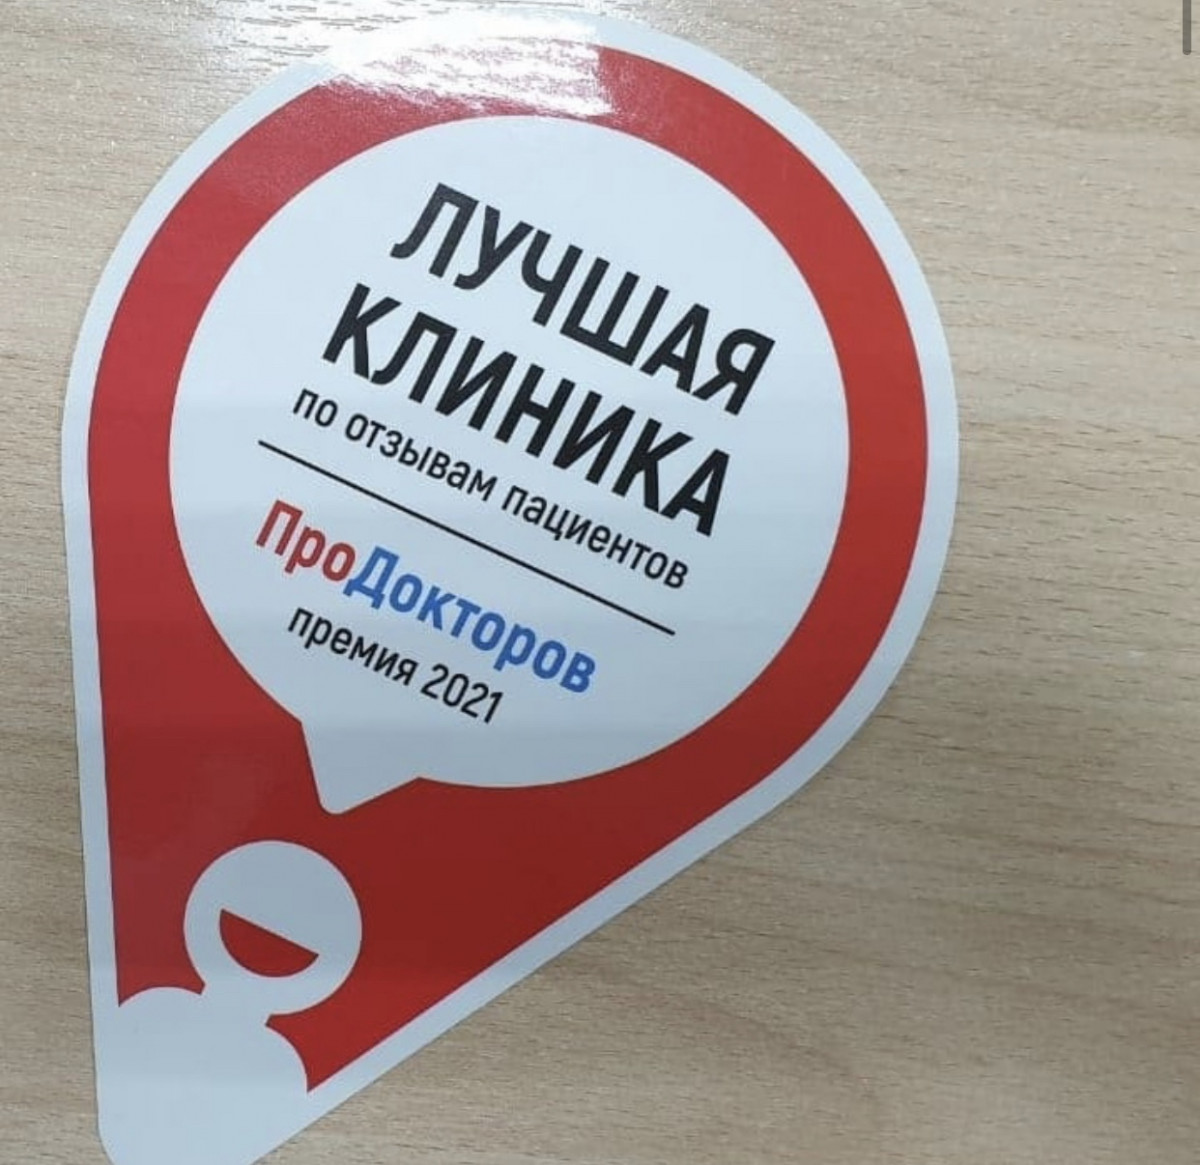 Городская больница №29 стала лауреатом Всероссийской премии «ПроДокторов»